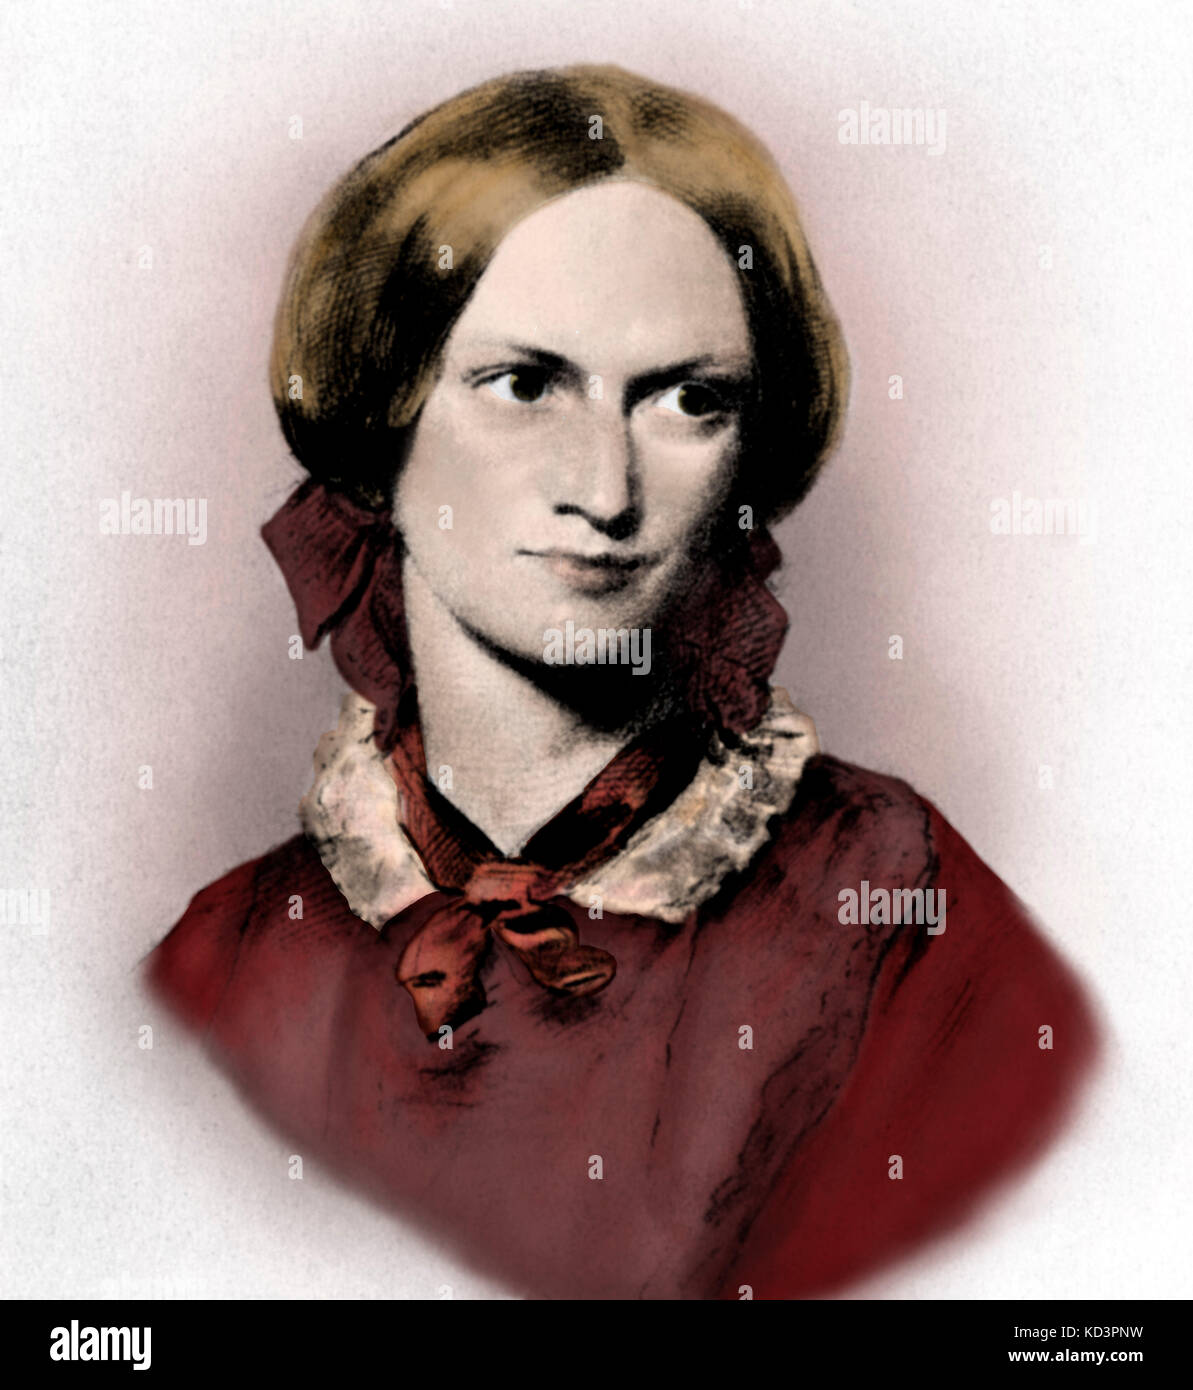 Charlotte Brontë, britische Schriftstellerin - Porträt Kreidezeichnung von George Richmond--1816-1855.  National Portrait Gallery Stockfoto